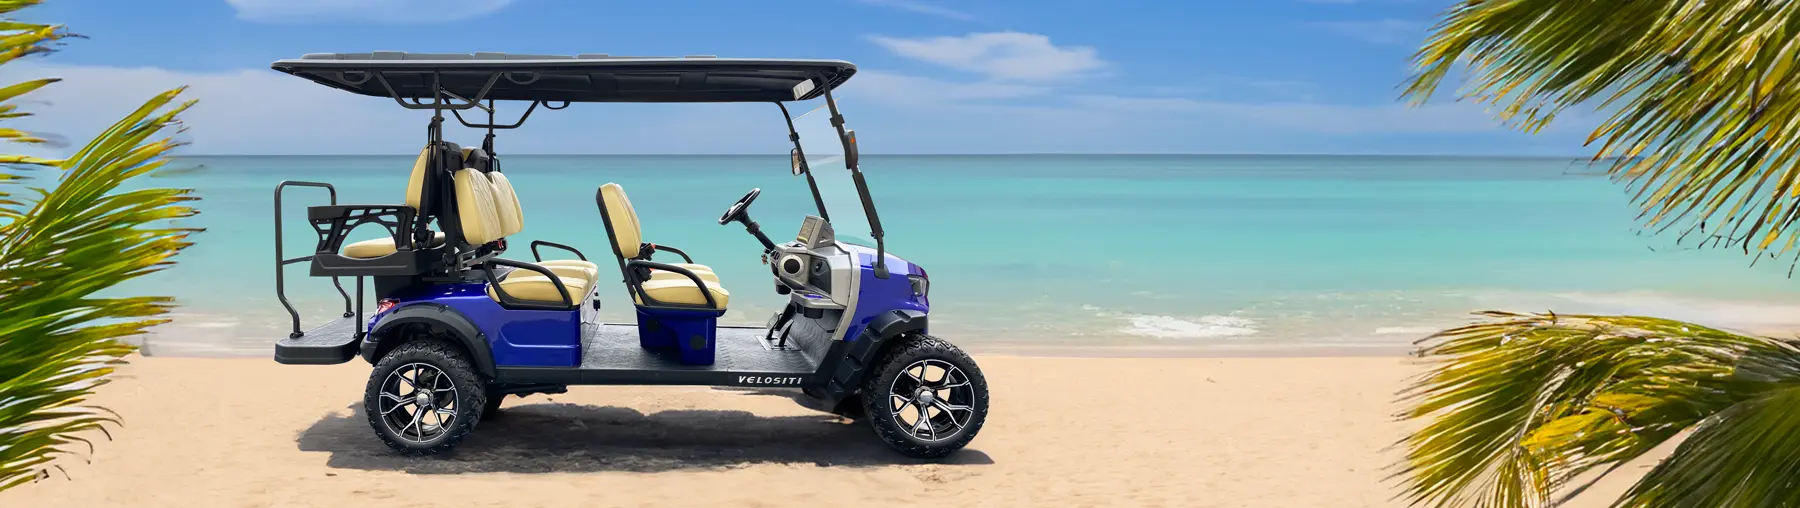 Four seat golf cart on sunny beach